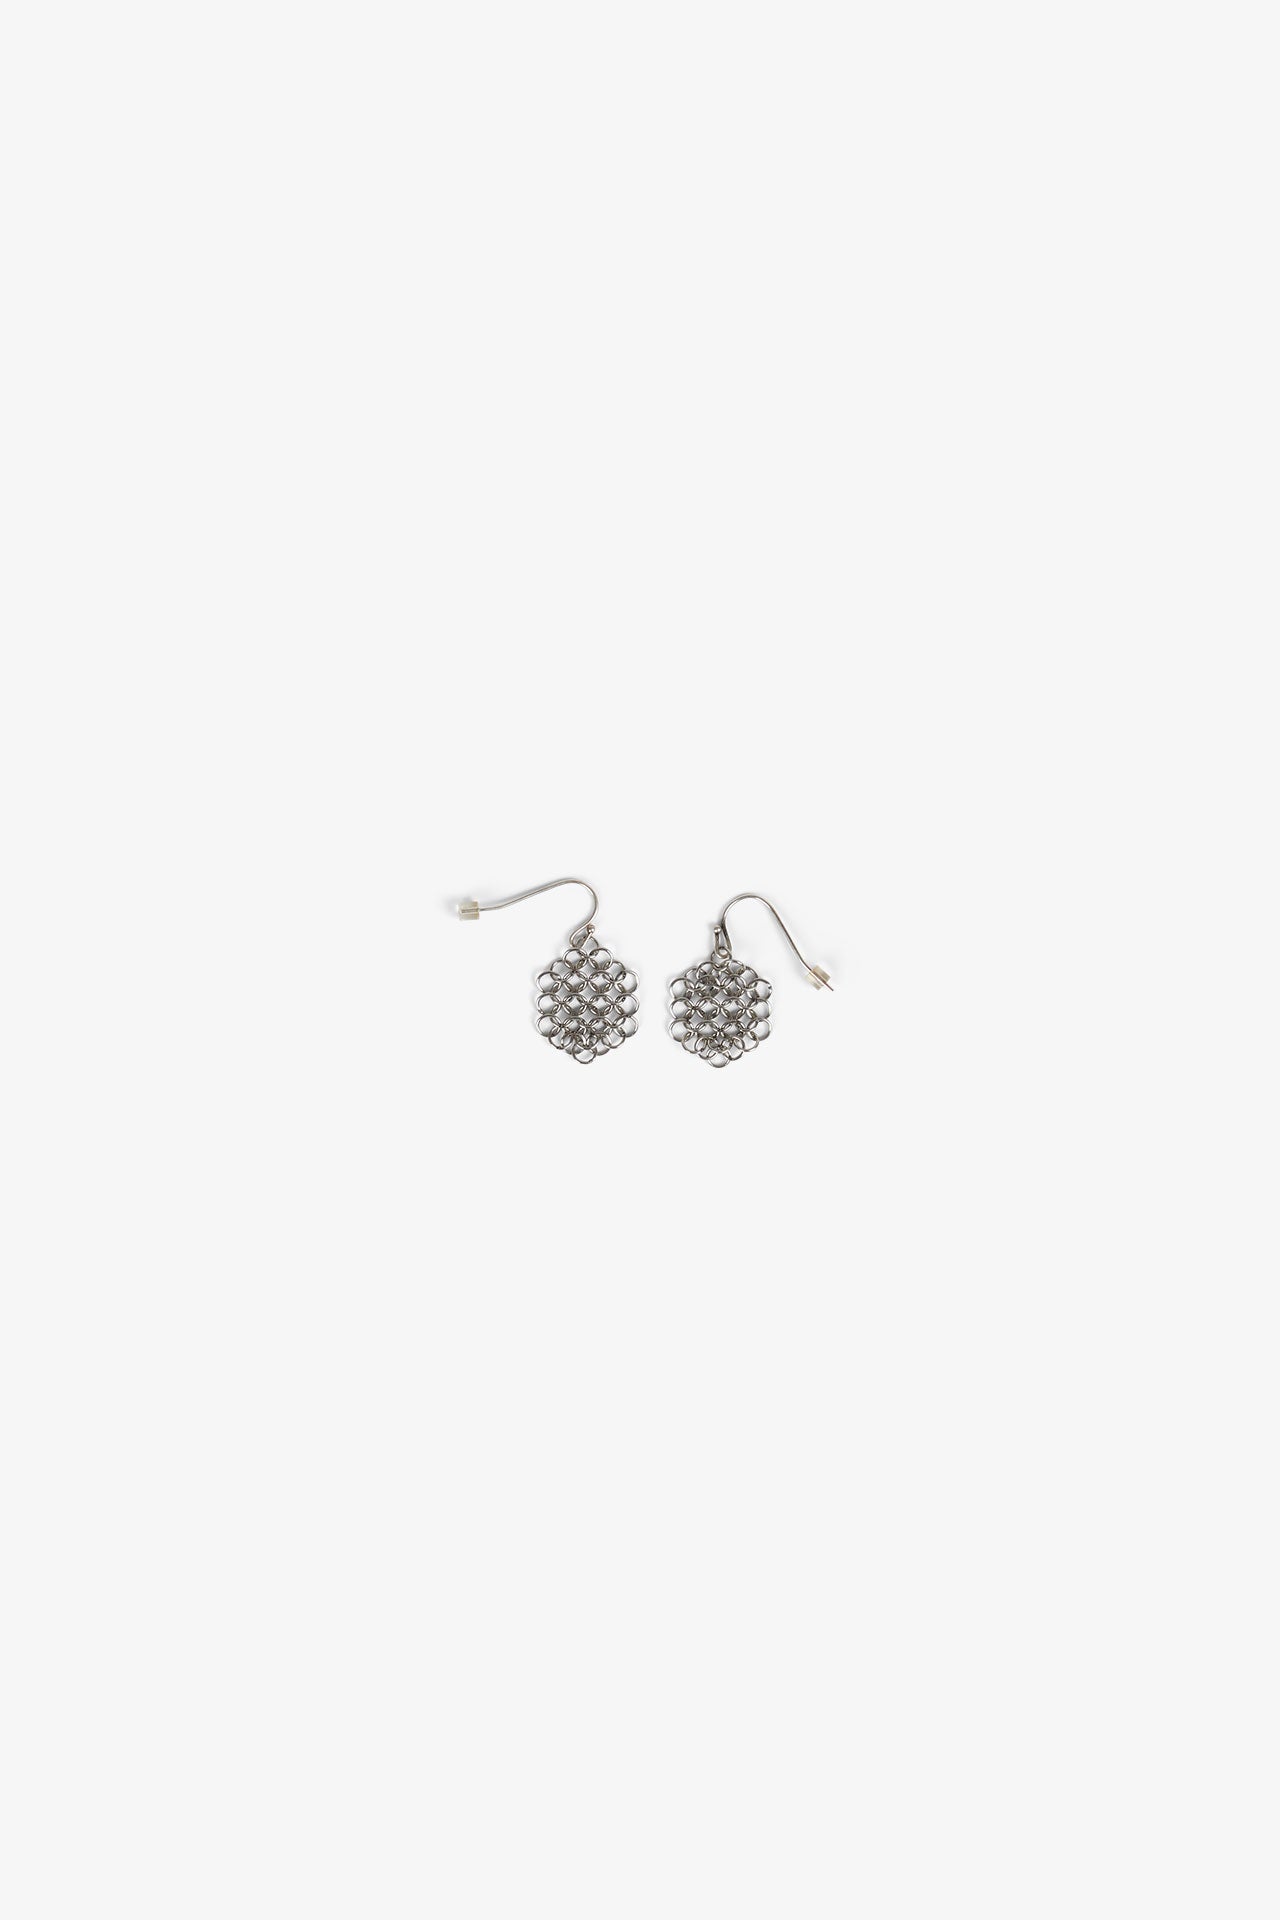 Boucles d'oreilles ronde/round earrings - AR - Louison